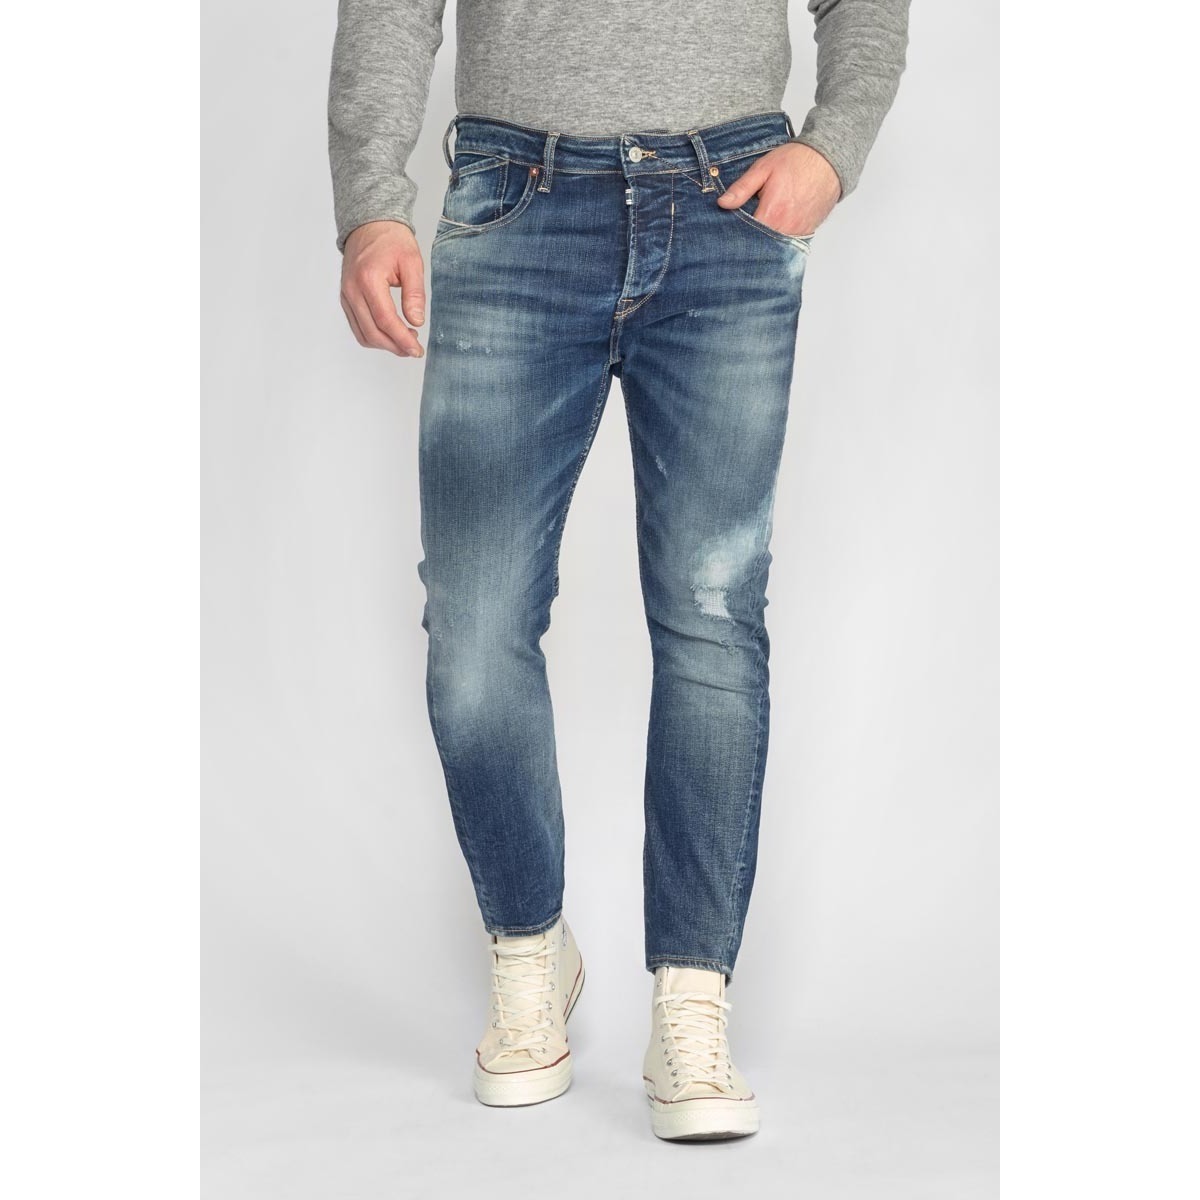 Le Temps des Cerises Bleu Blacksun 900/16 tapered jeans